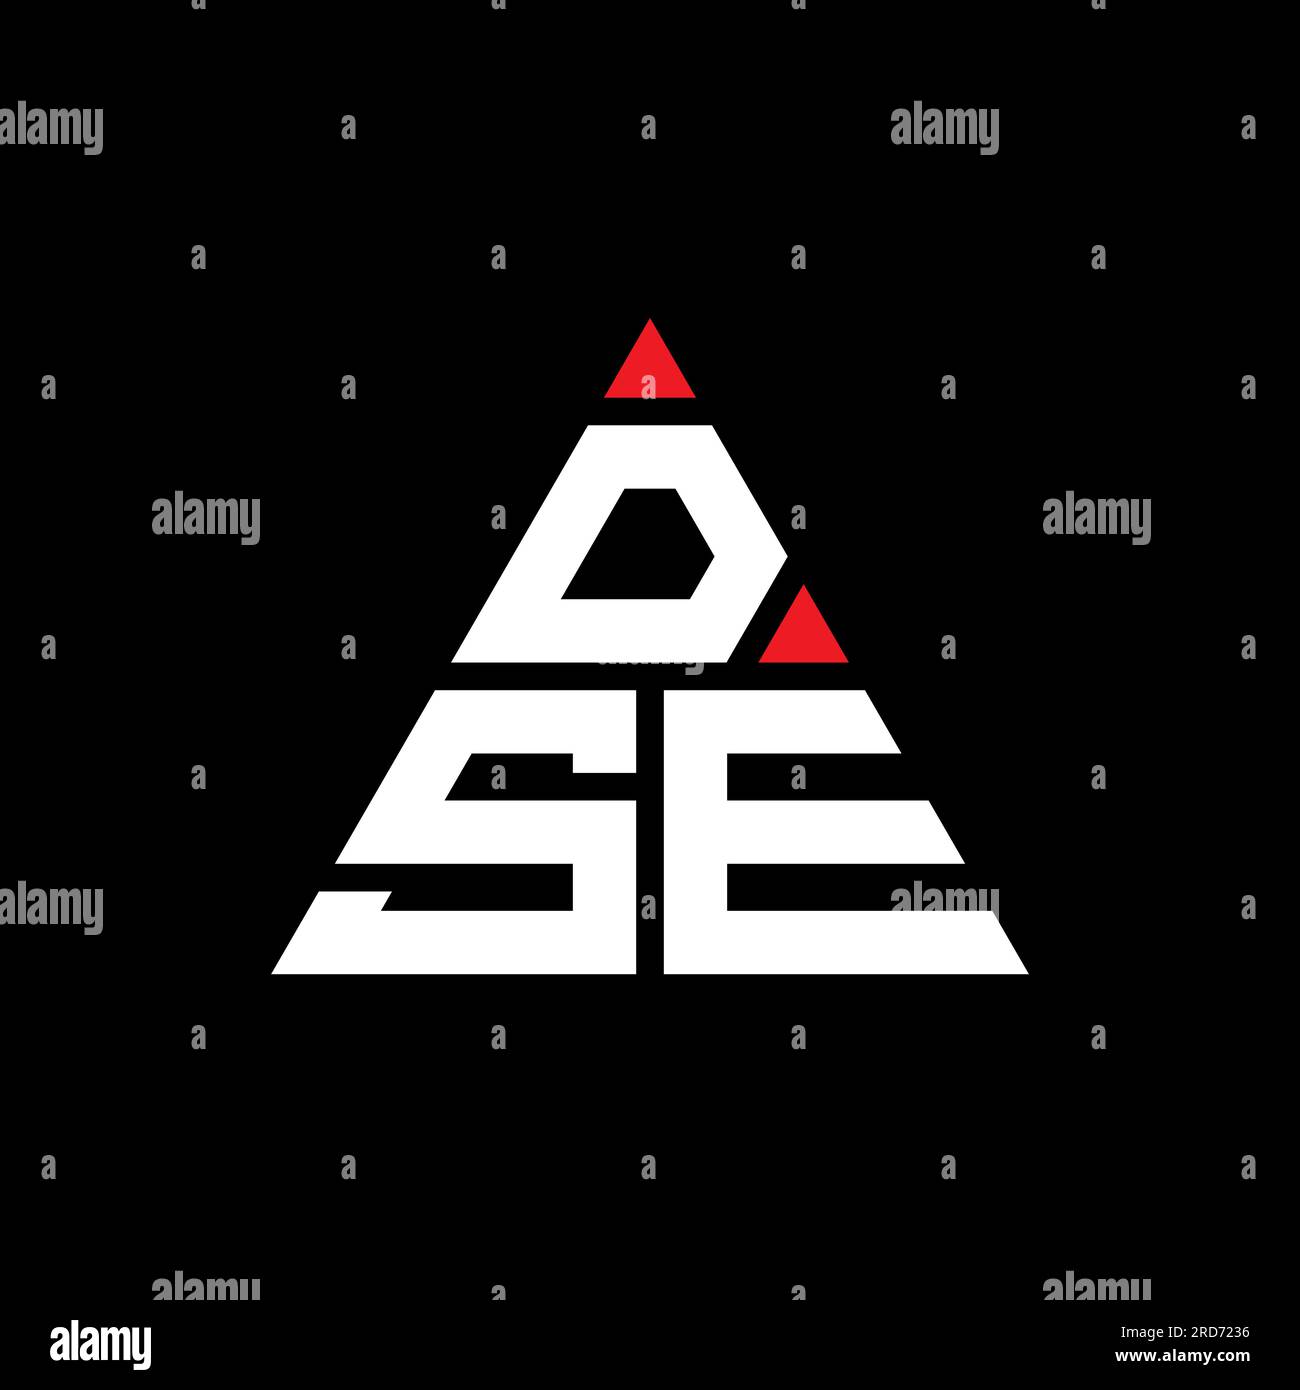 DSE-Logo mit Dreiecksbuchstaben und Dreiecksform. DSE-Dreieck-Logo-Monogramm. DSE-Dreieck-Vektor-Logo-Vorlage mit roter Farbe. DSE Triangul Stock Vektor